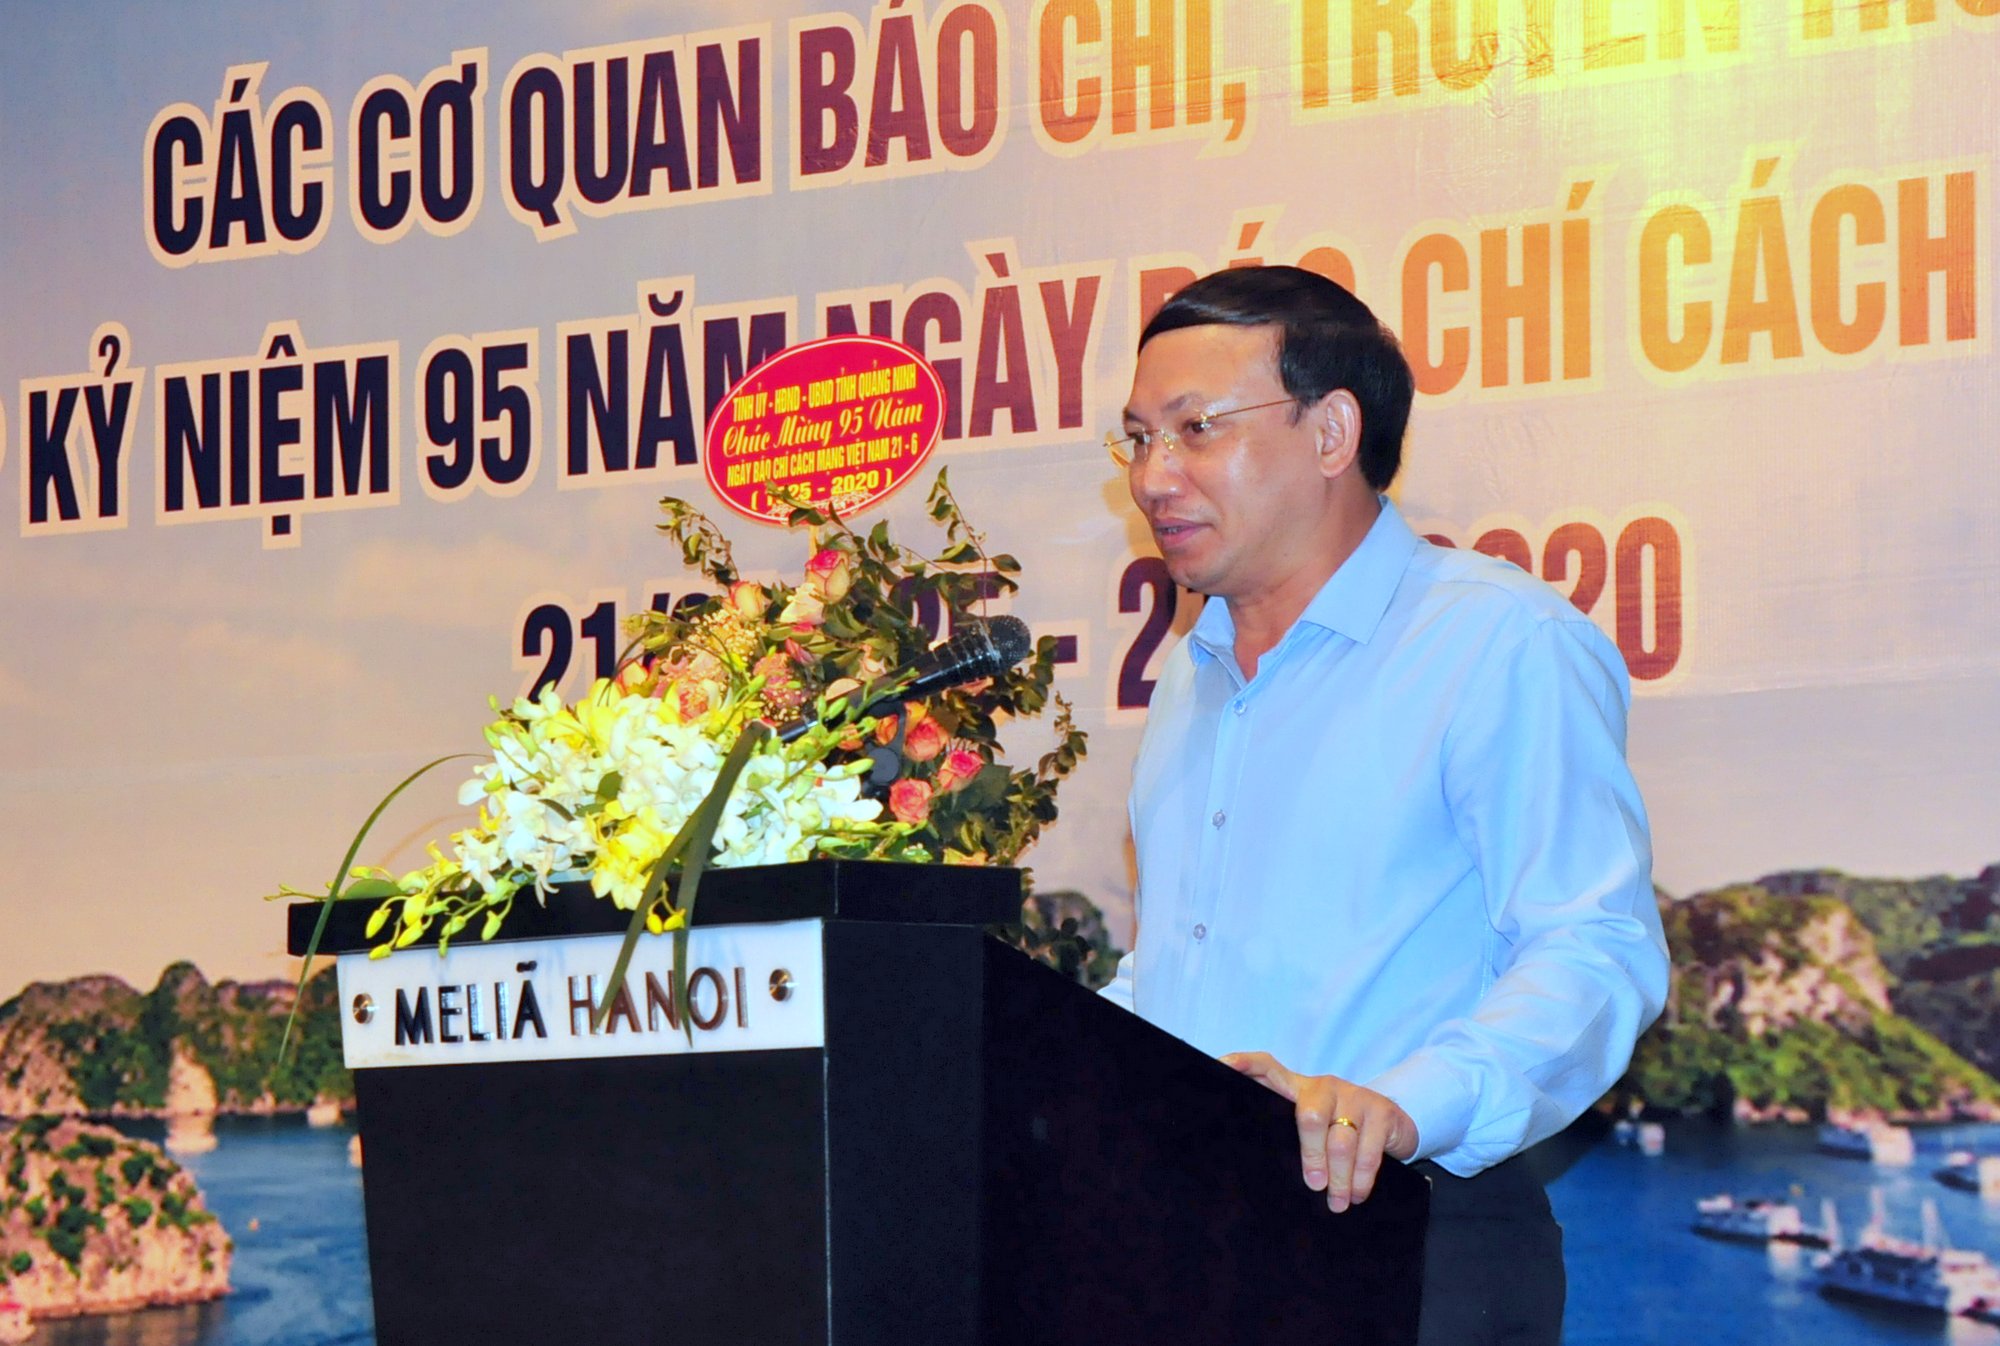 Đồng chí Nguyễn Xuân Ký, Bí thư Tỉnh ủy, Chủ tịch HĐND tỉnh, phát biểu chúc mừng kỷ niệm  tại buổi gặp mặt.